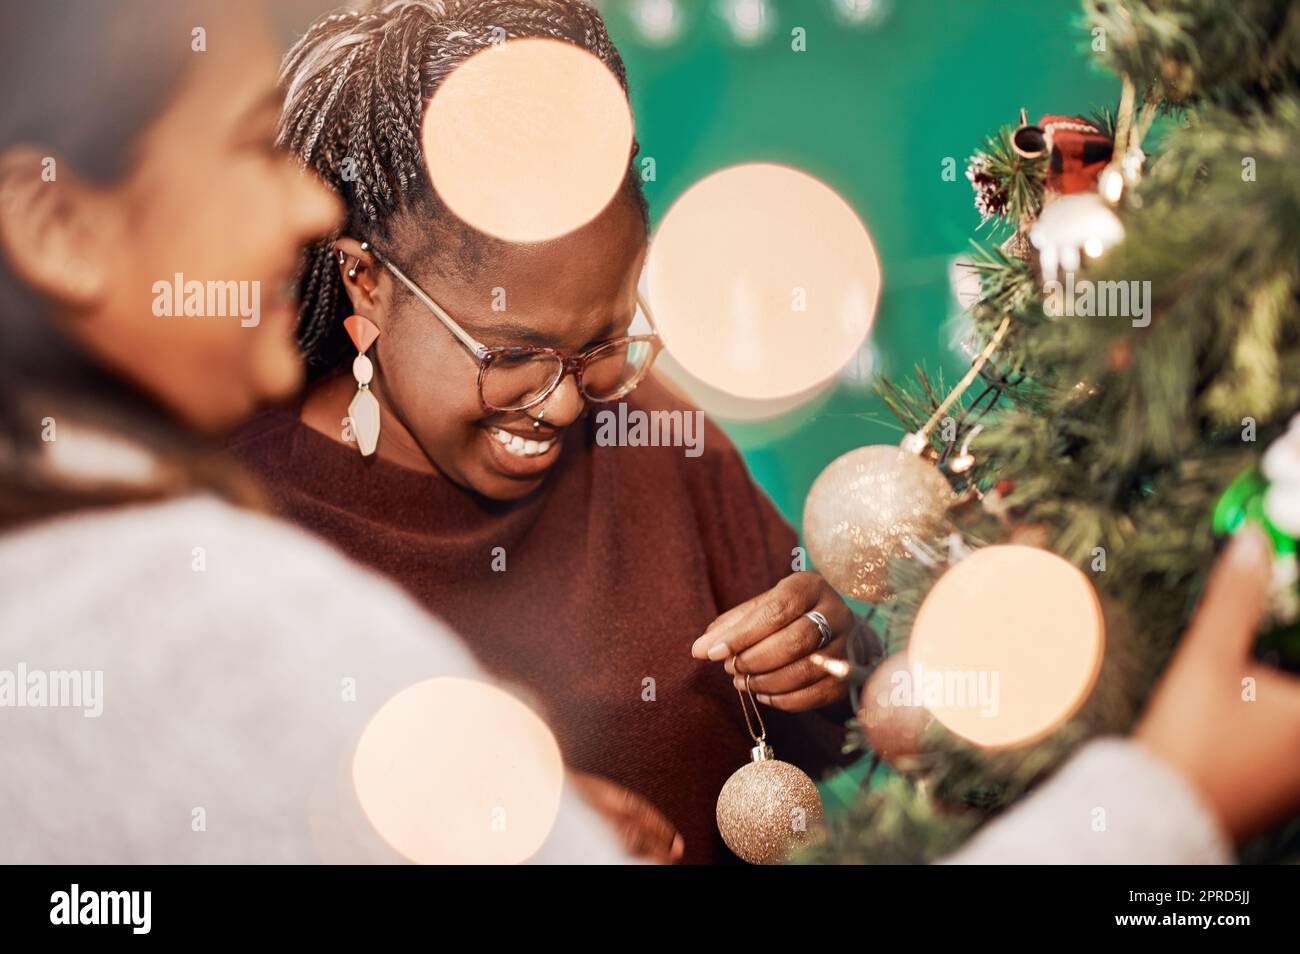 La saison des fêtes est officiellement ouverte. Deux jeunes femmes décorent un arbre de Noël à la maison. Banque D'Images